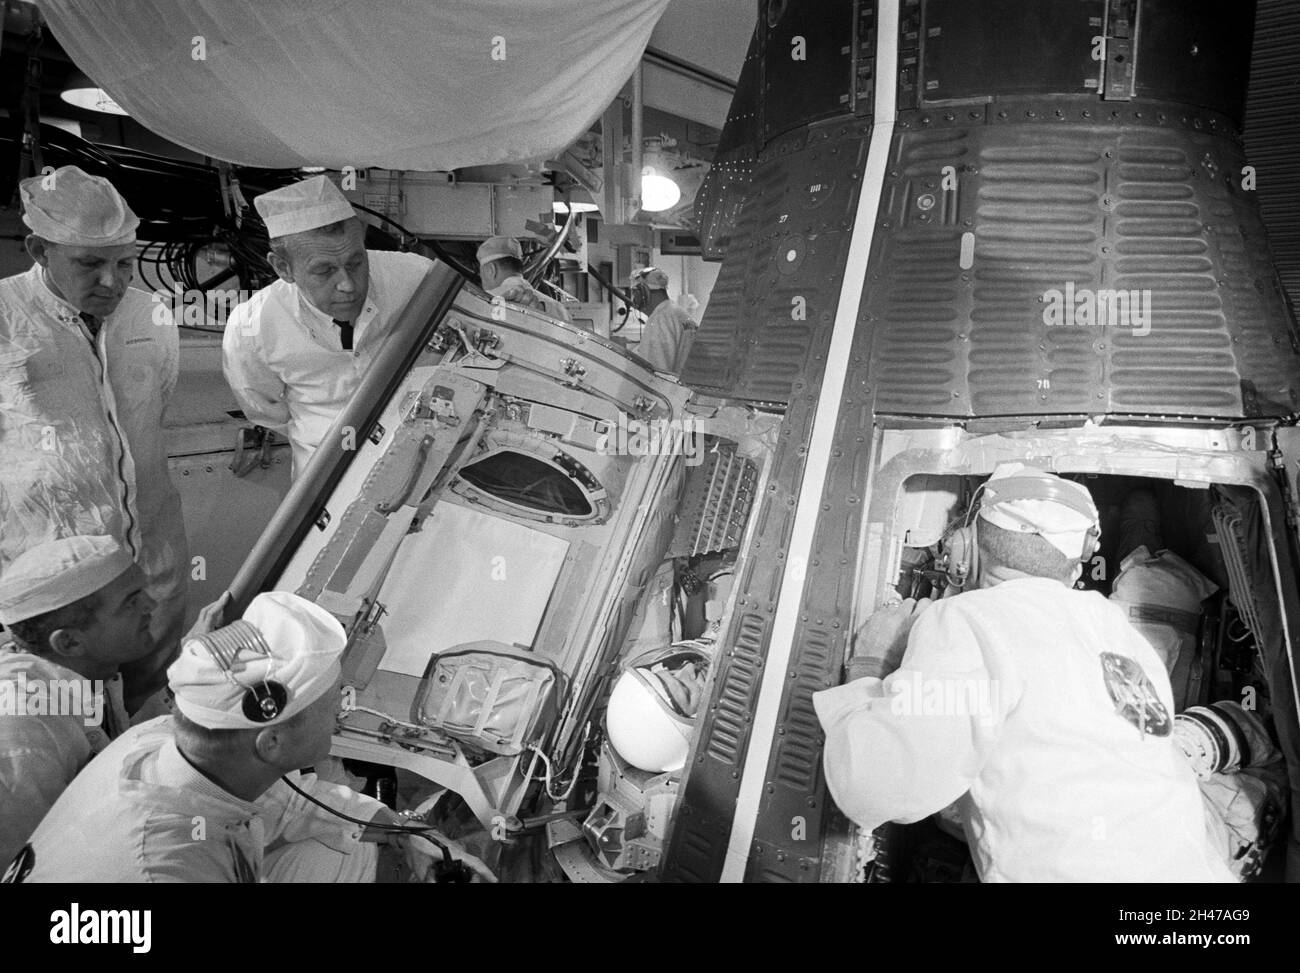 (10 de septiembre de 1966) --- Técnicos en la Sala Blanca sobre la Almohadilla 19 se preparan para cerrar escotillas en la nave espacial Gemini-11 durante la cuenta regresiva previa al lanzamiento. Dentro de la nave espacial están los astronautas Charles Conrad Jr., piloto de mando, y Richard F. Gordon Jr., piloto. Foto de stock